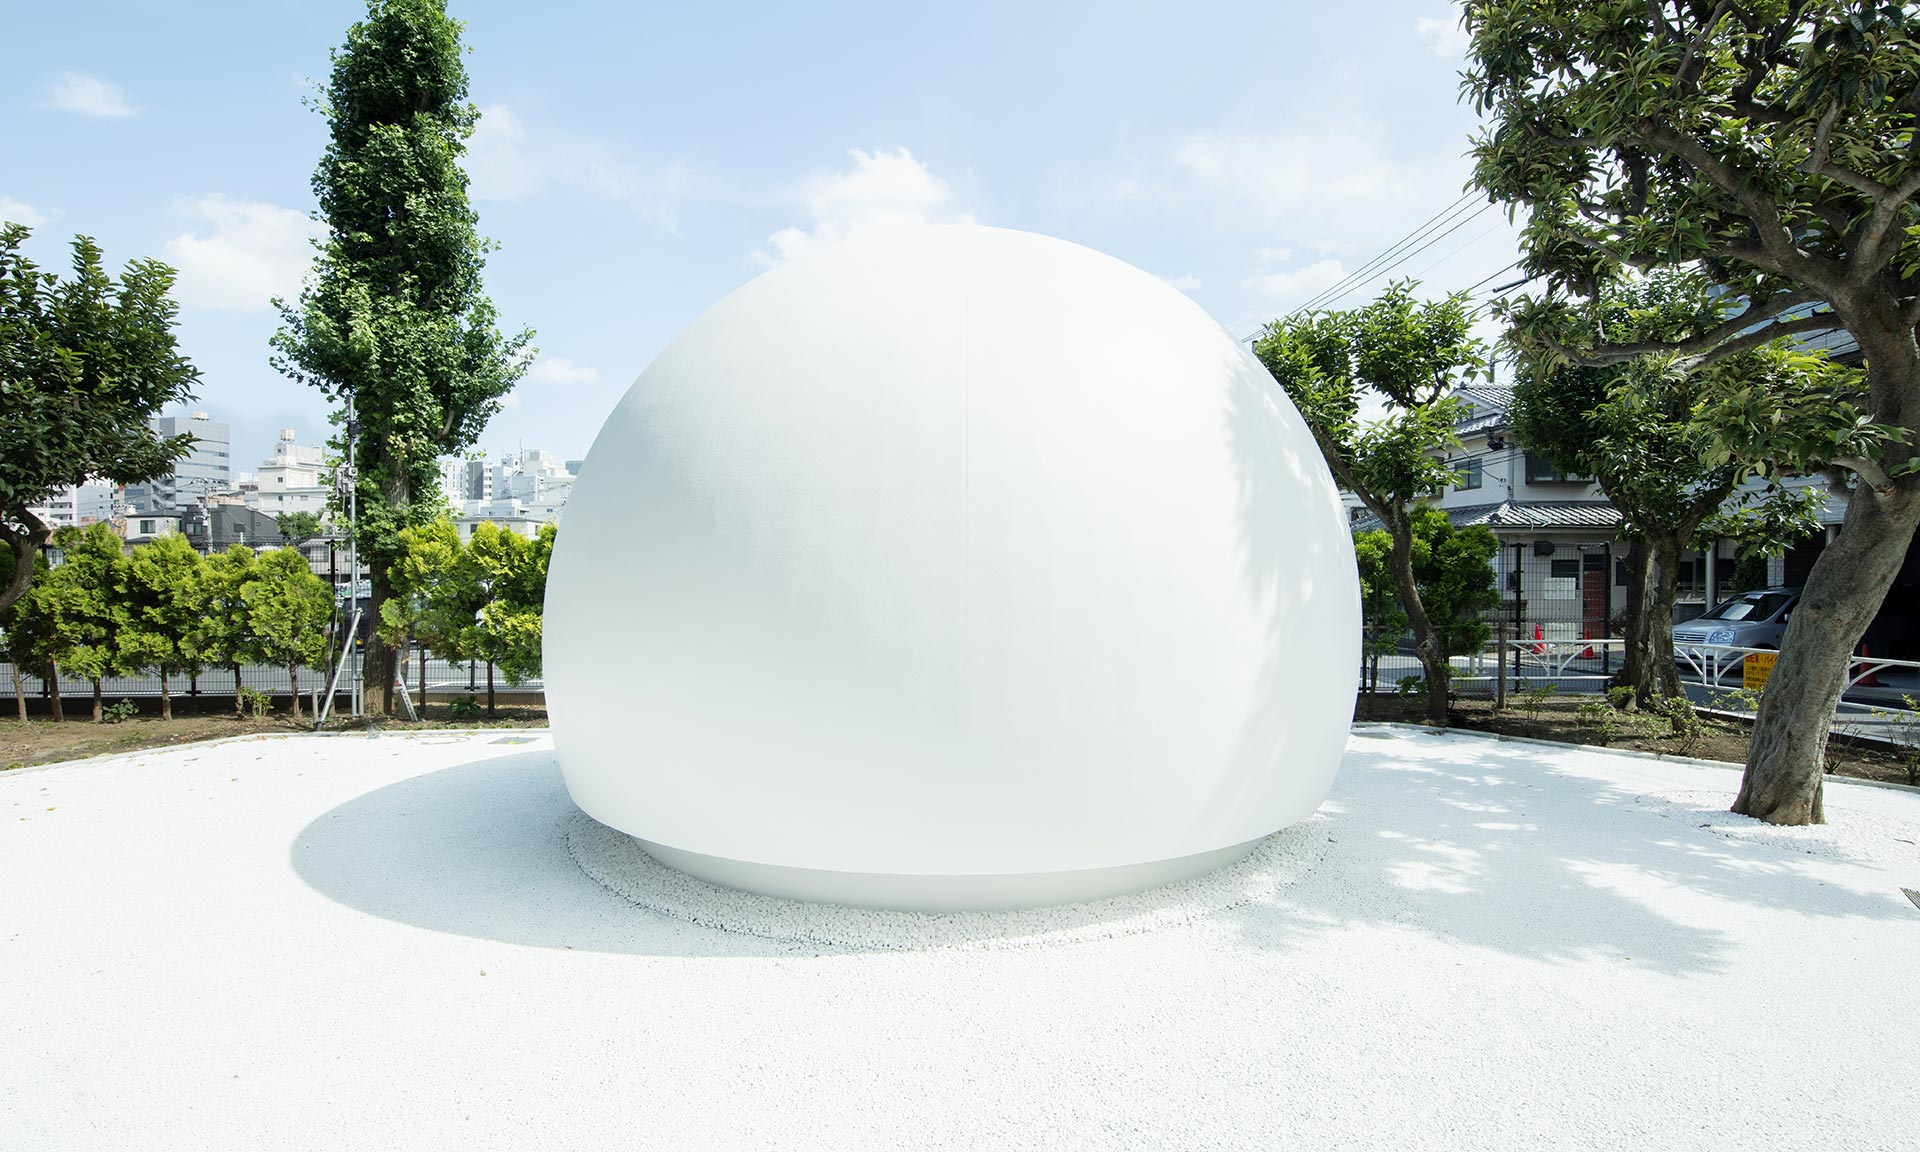 Tokijská veřejná toaleta dostala tvar velké bílé koule a ovládání hlasem